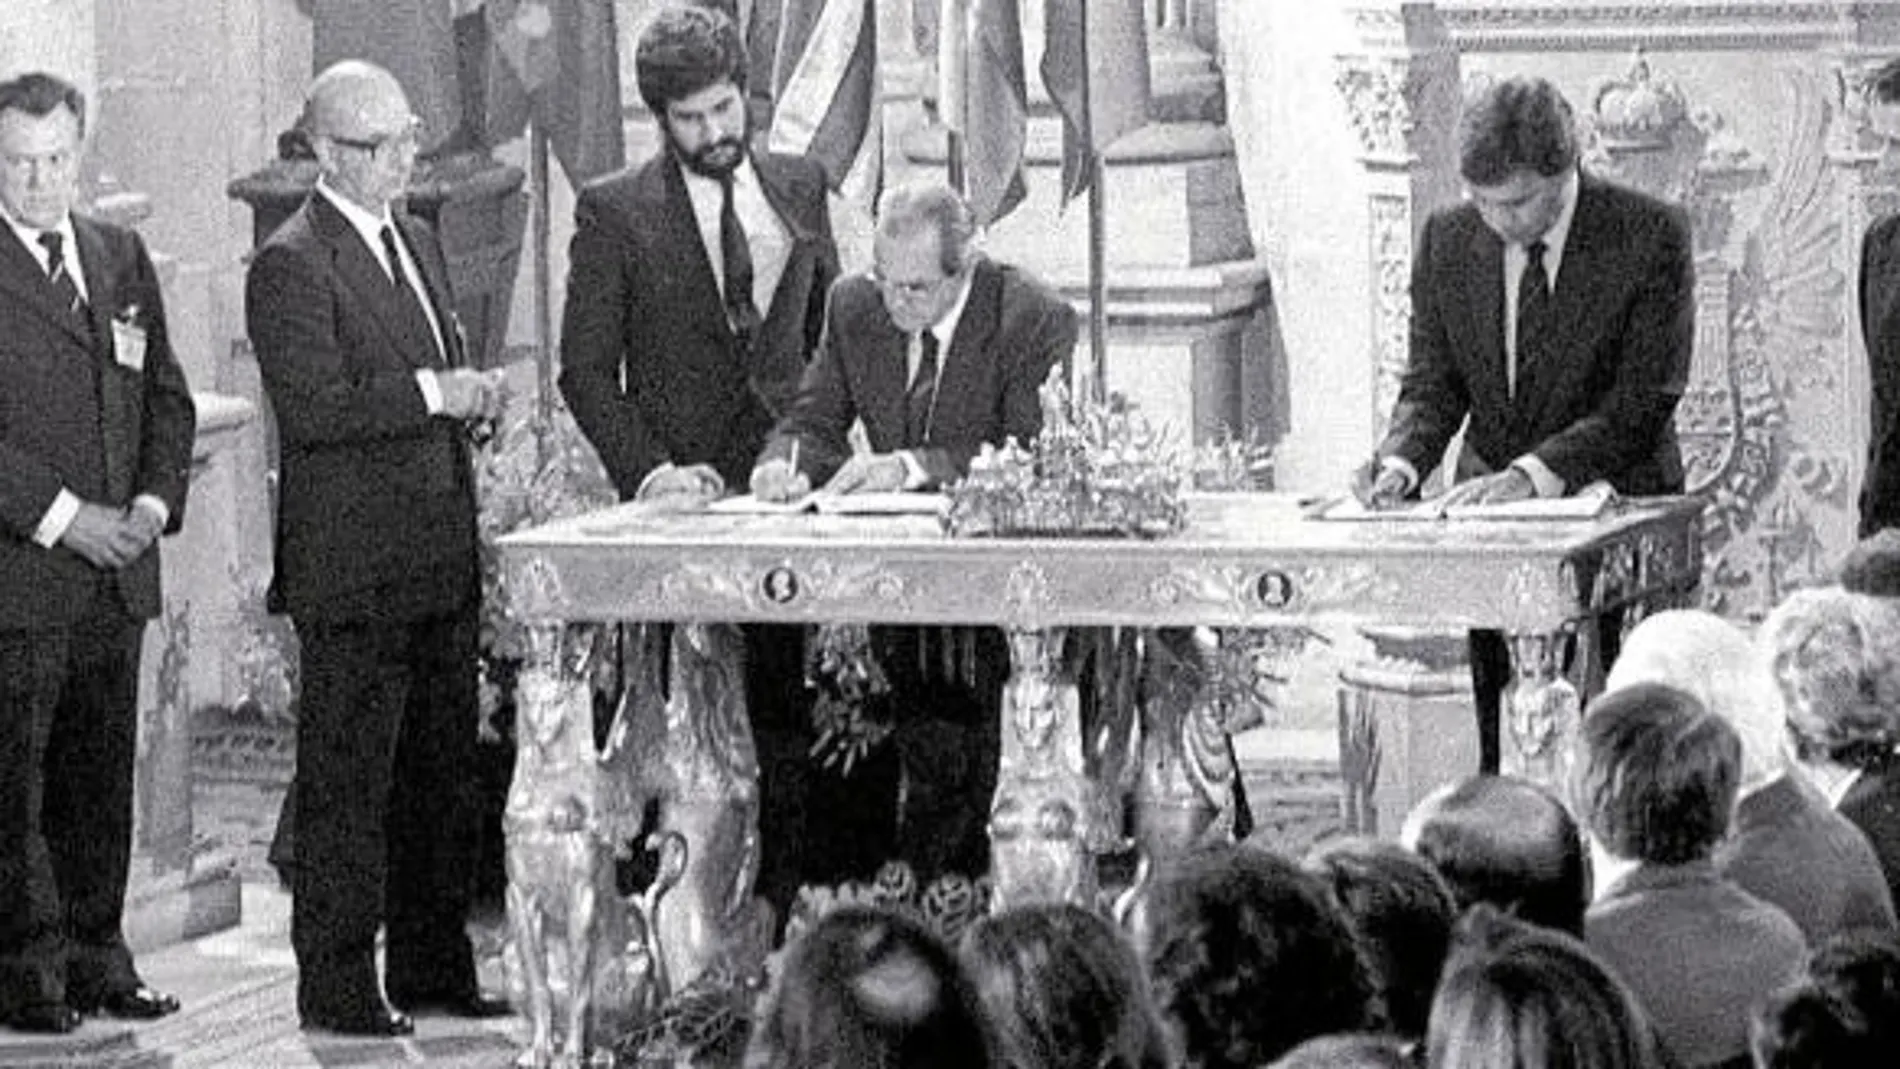 Una firma para la historia. El 12 de junio de 1985 se sellaba en el Palacio Real el Tratado de Adhesión, que se hacía efectivo el 1 de enero de 1986